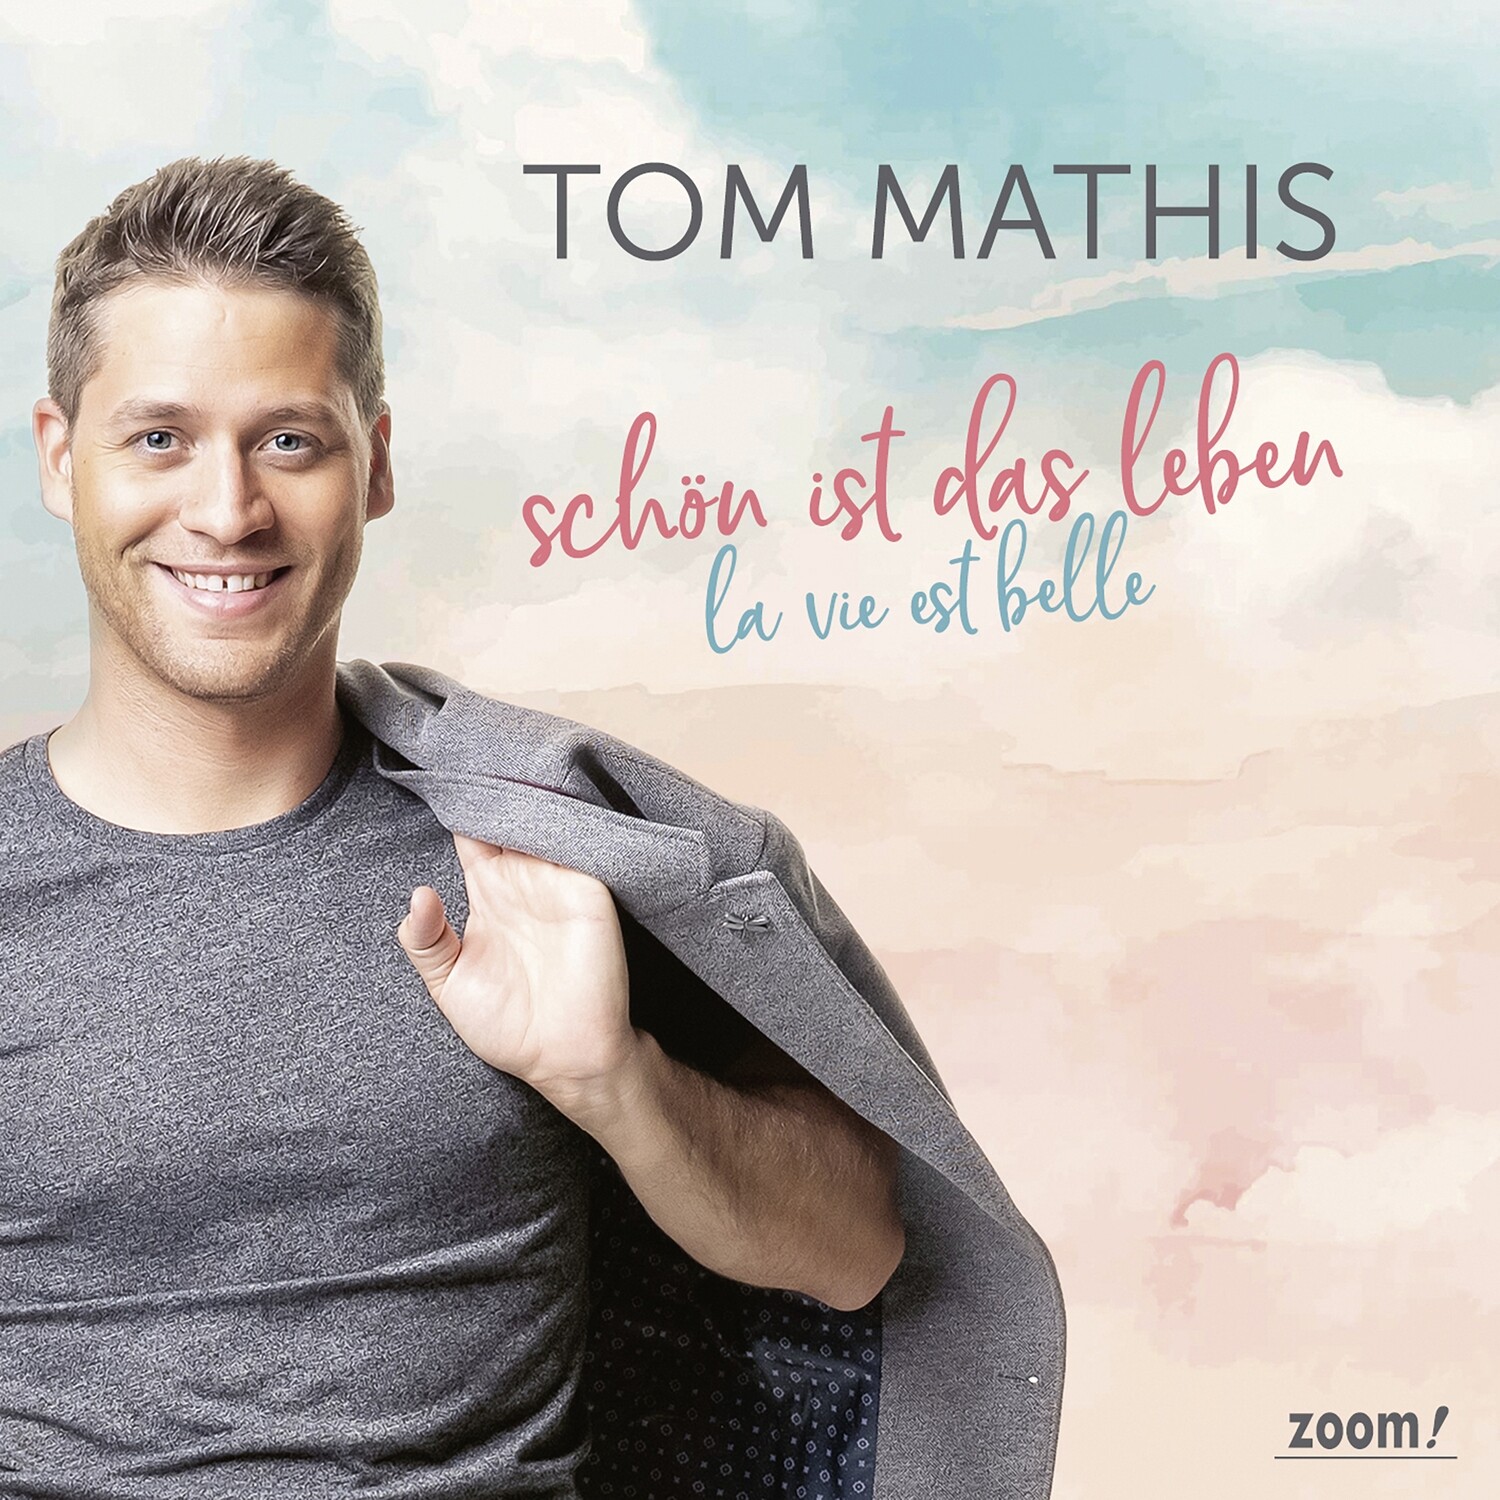 Tom Mathis – Schön ist das Leben (La vie est belle)